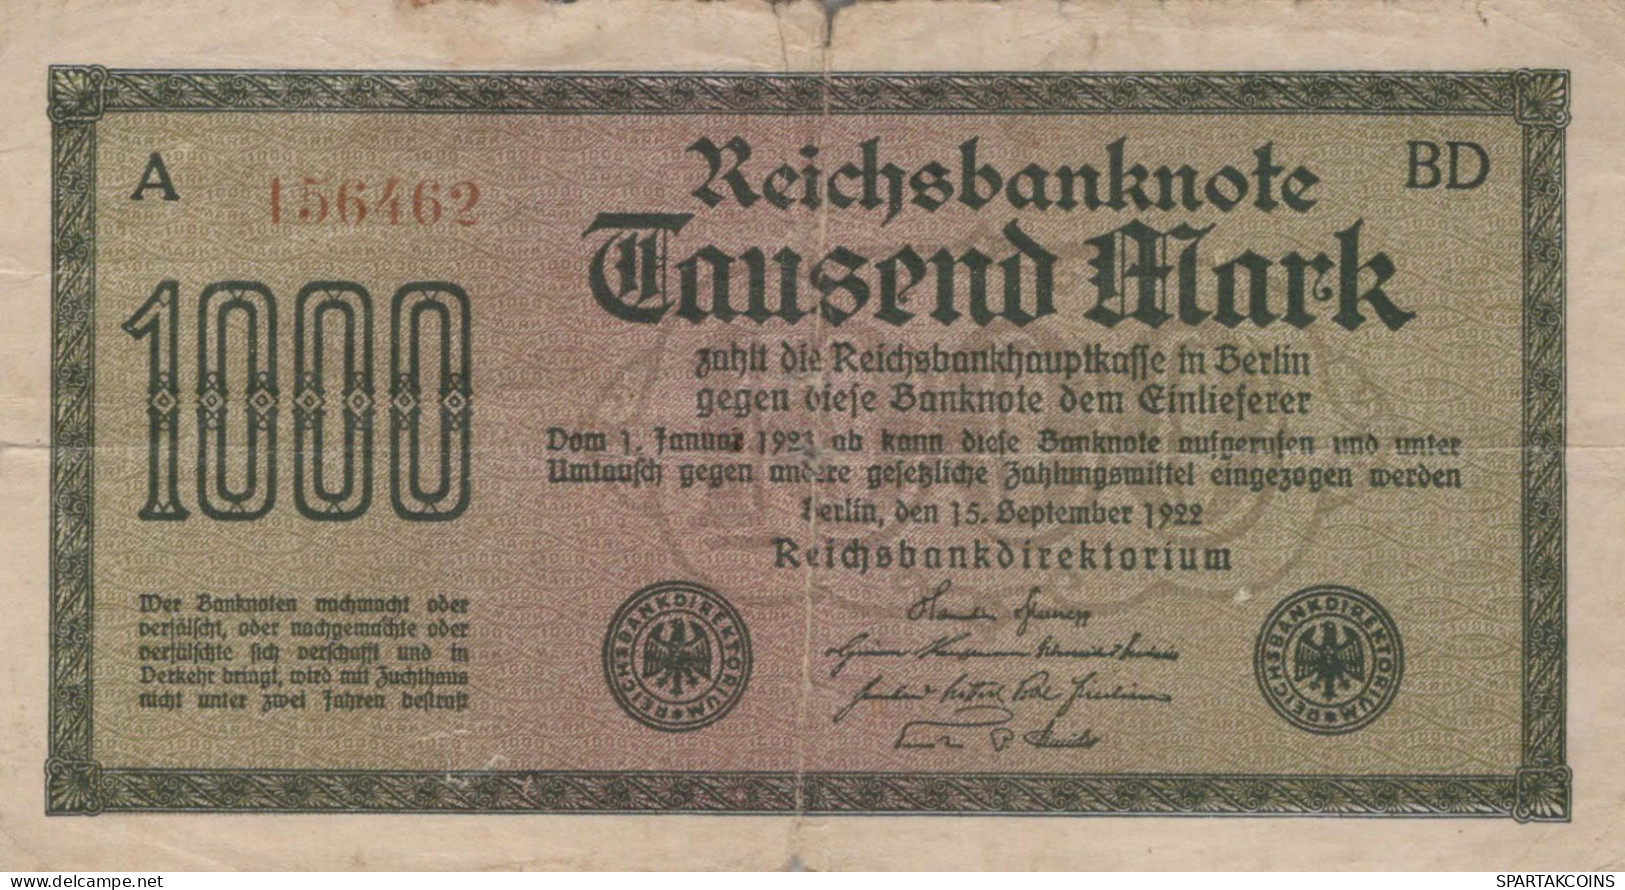 1000 MARK 1922 Stadt BERLIN DEUTSCHLAND Papiergeld Banknote #PL022 - [11] Emisiones Locales